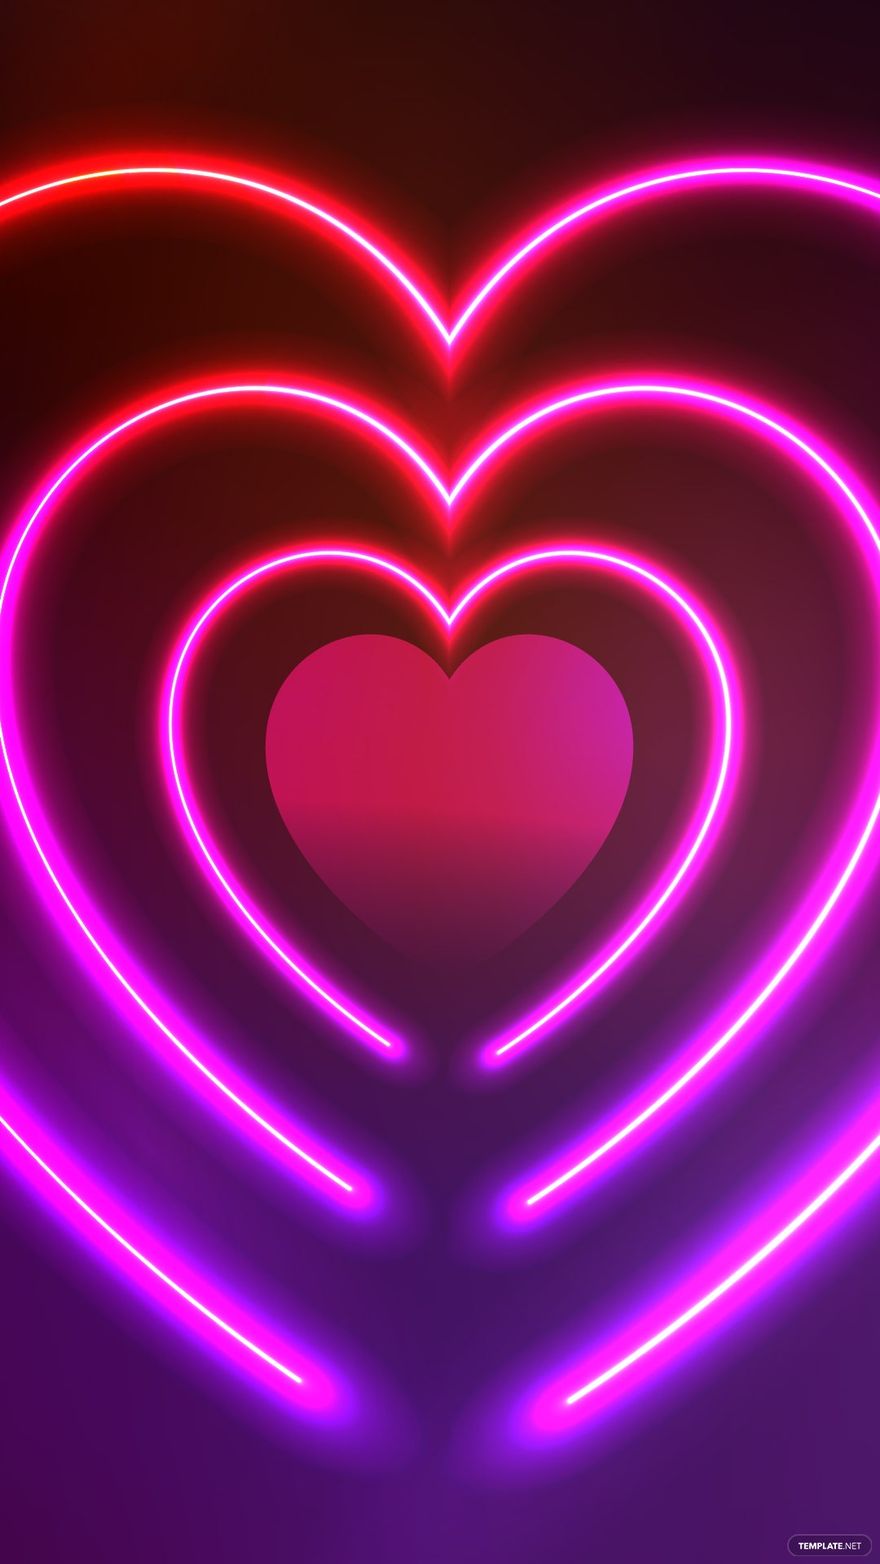 Free Neon Heart Background in Illustrator, EPS, SVG, JPG